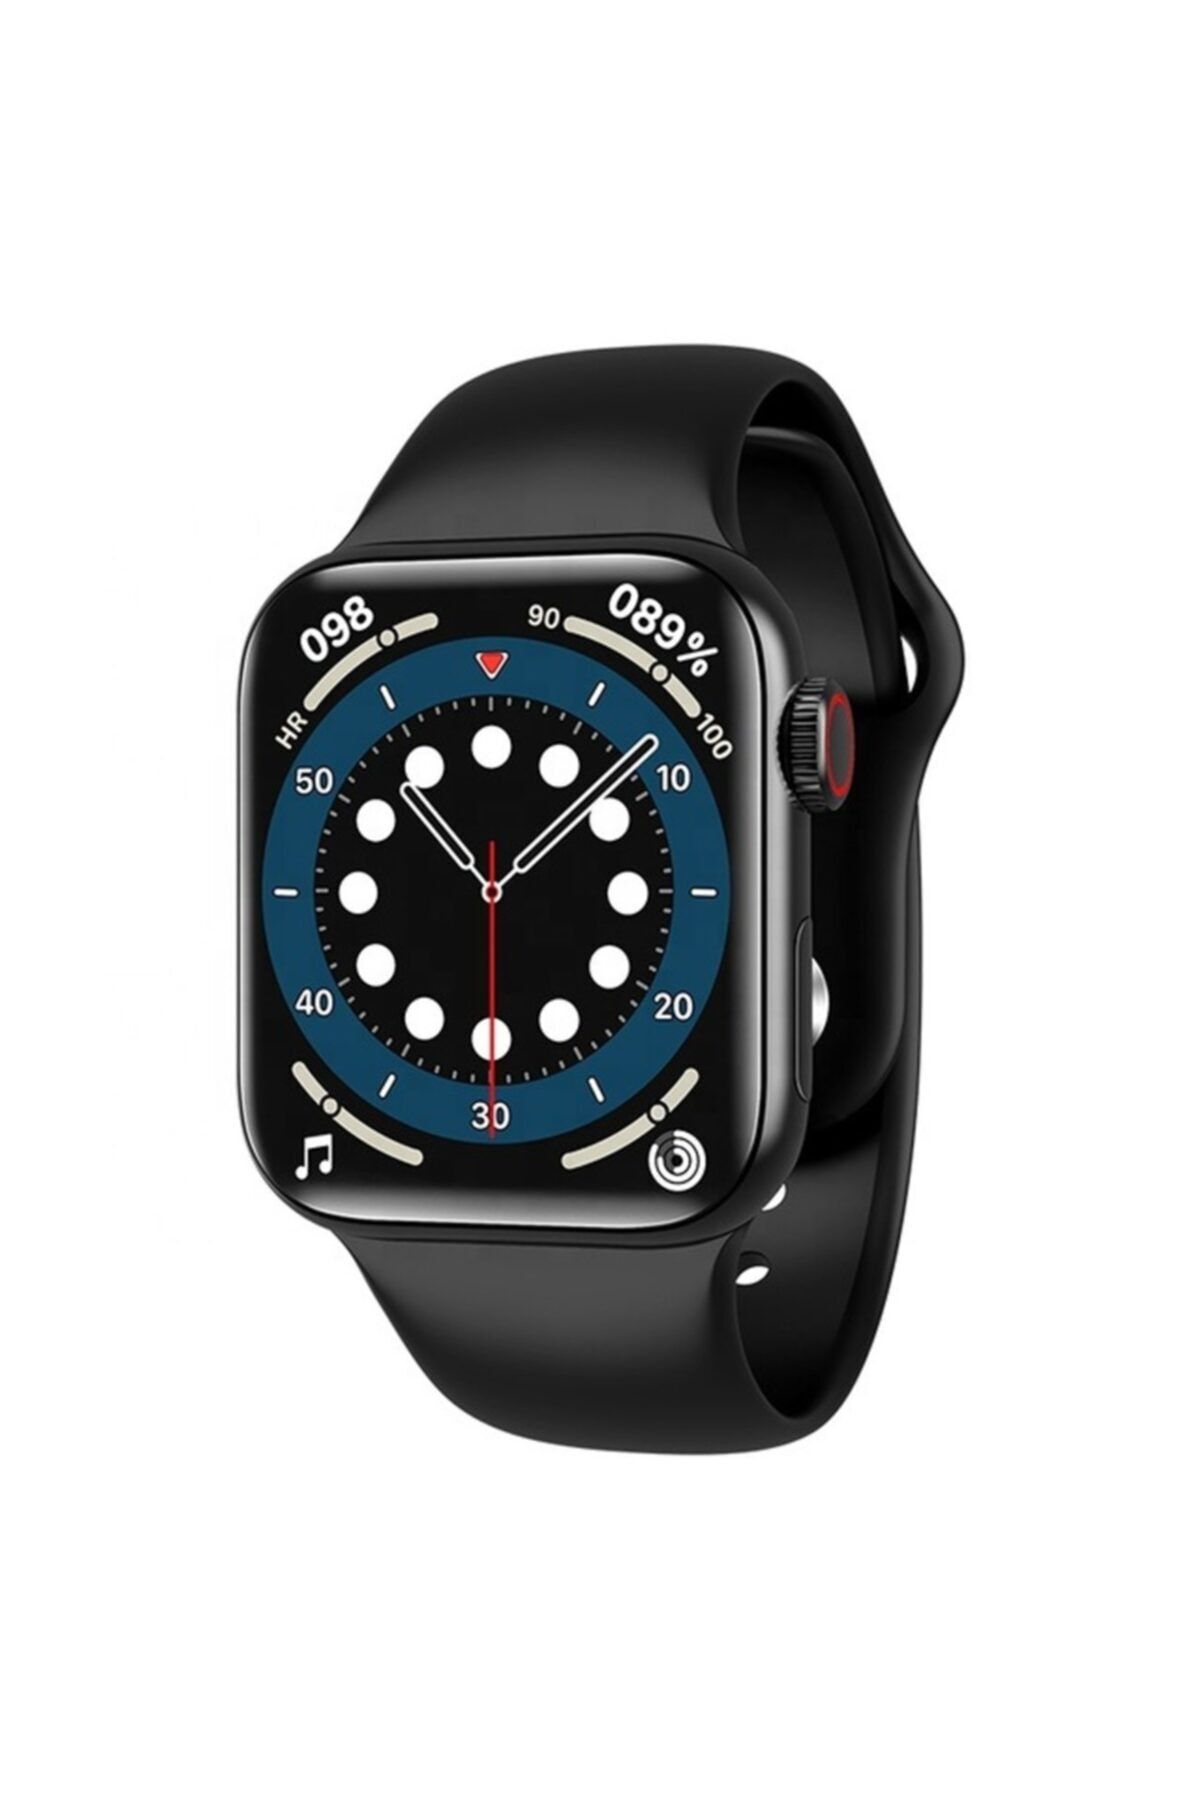 medigen Watch 7 Plus 2021  Uyumlu Smartwatch Aramalı Iphone Android Uyumlu Nabız Ölçer Akıllı Saat